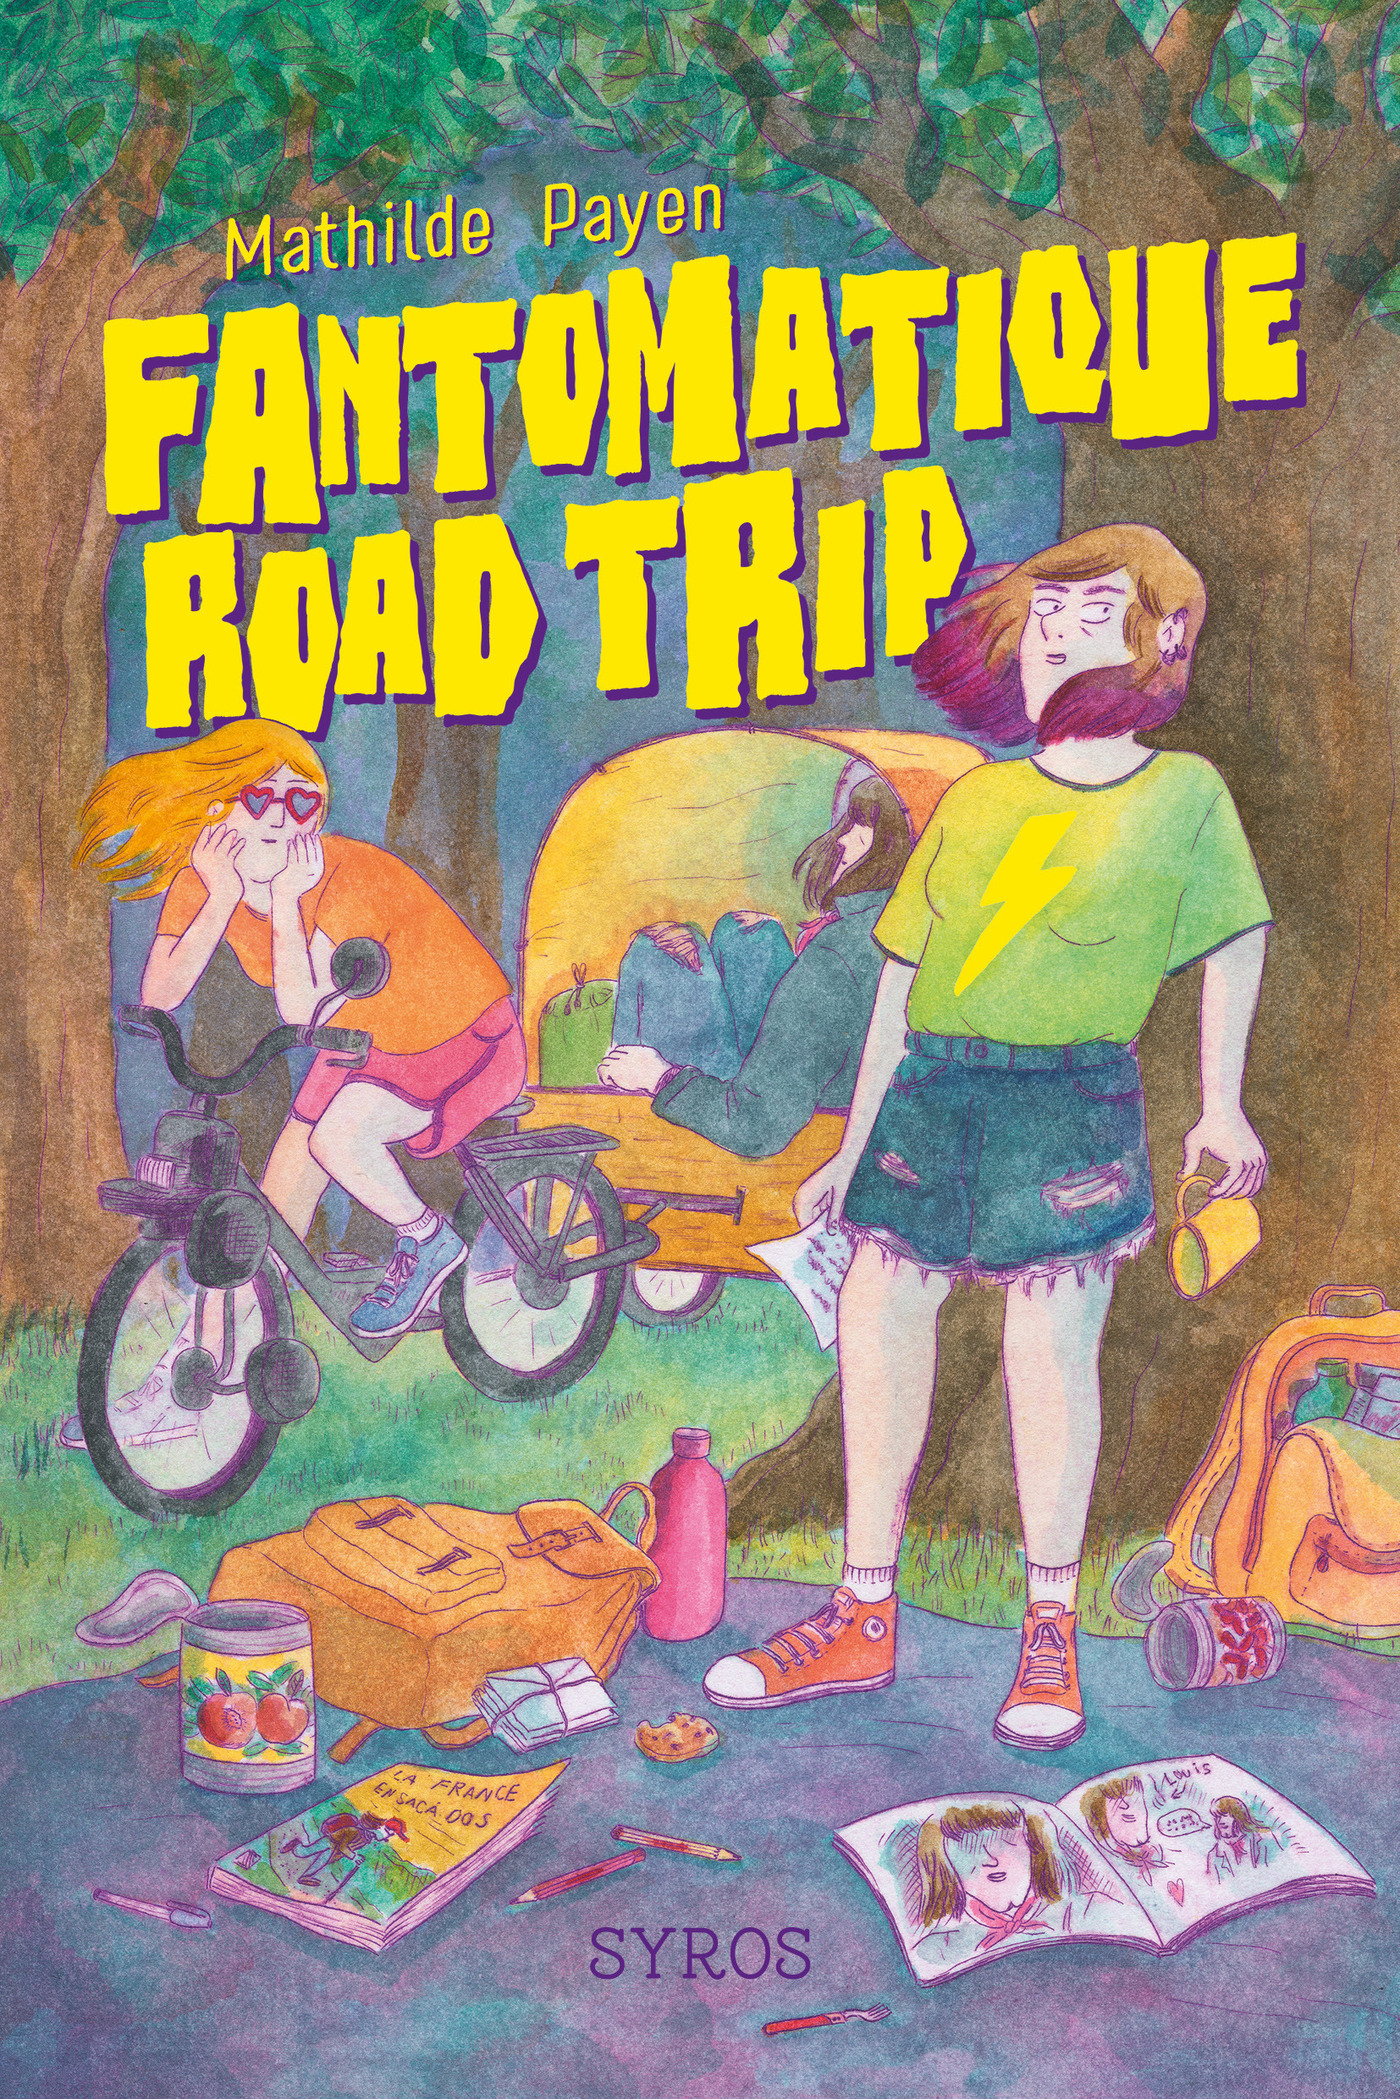 Afficher "Fantomatique road trip"